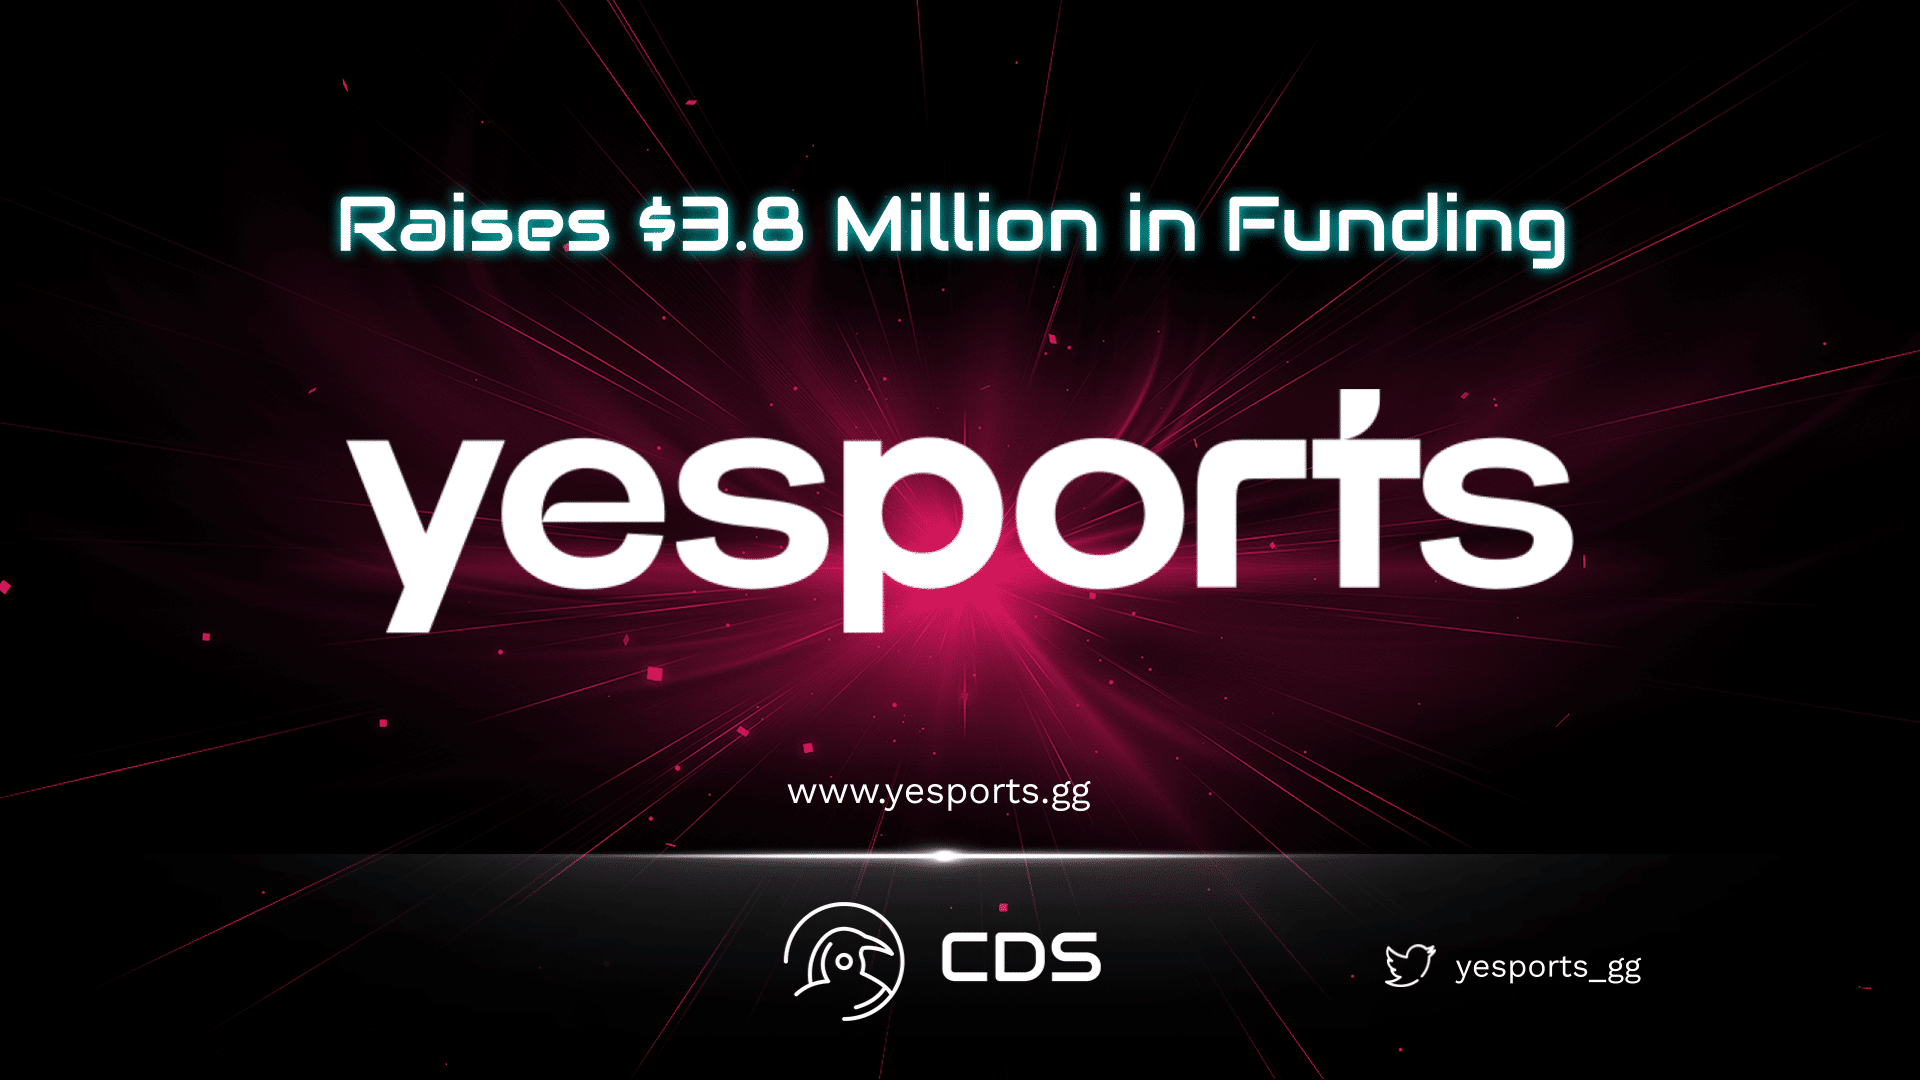 Yesports Raises $3.8 Million